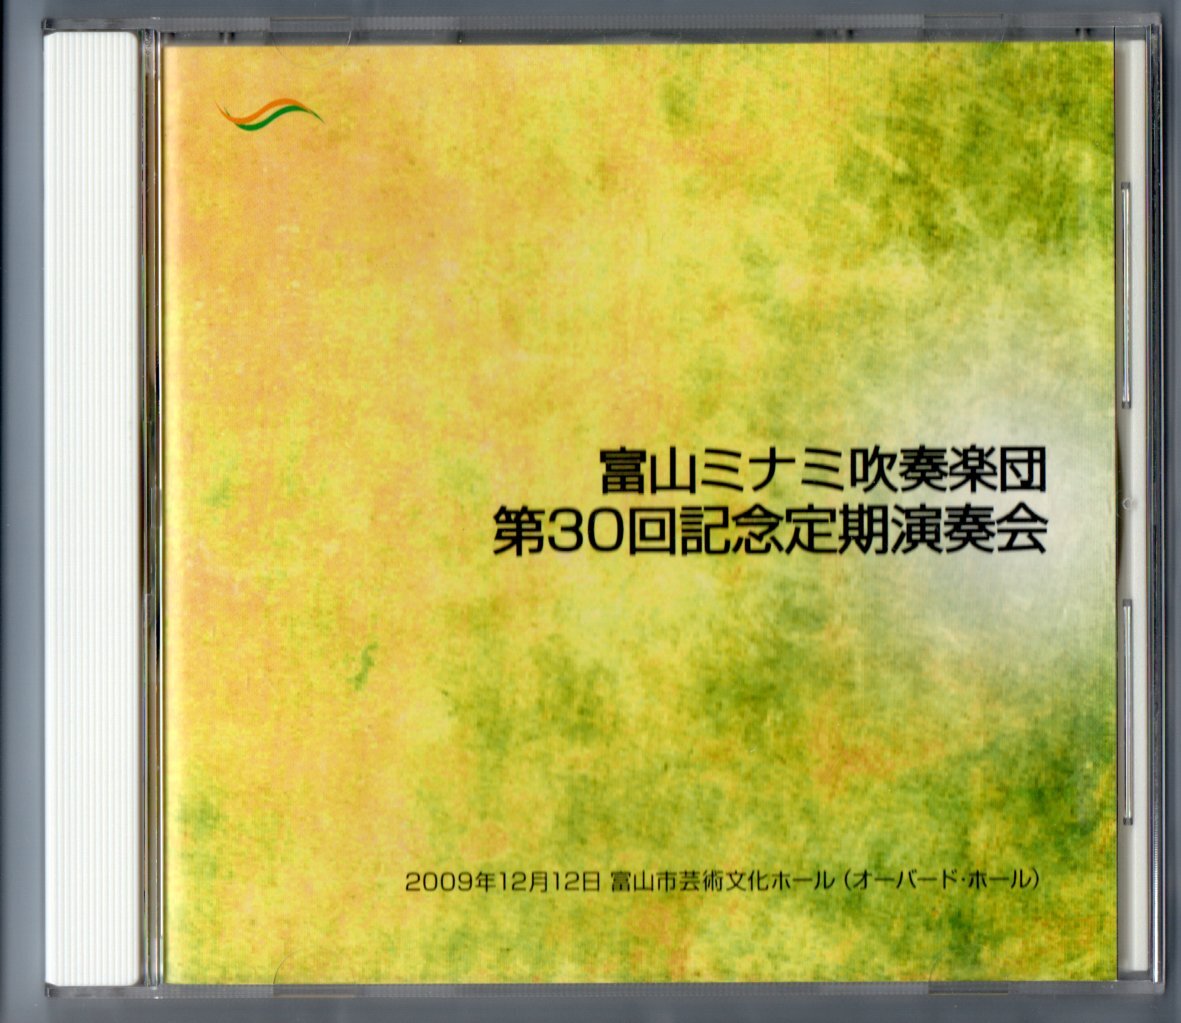 送料無料 CD 富山ミナミ吹奏楽団 第30回記念定期演奏会 シェルブールの雨傘によるジャズの歴史 カウボーイ序曲 交響的印象「海響」 他の画像1